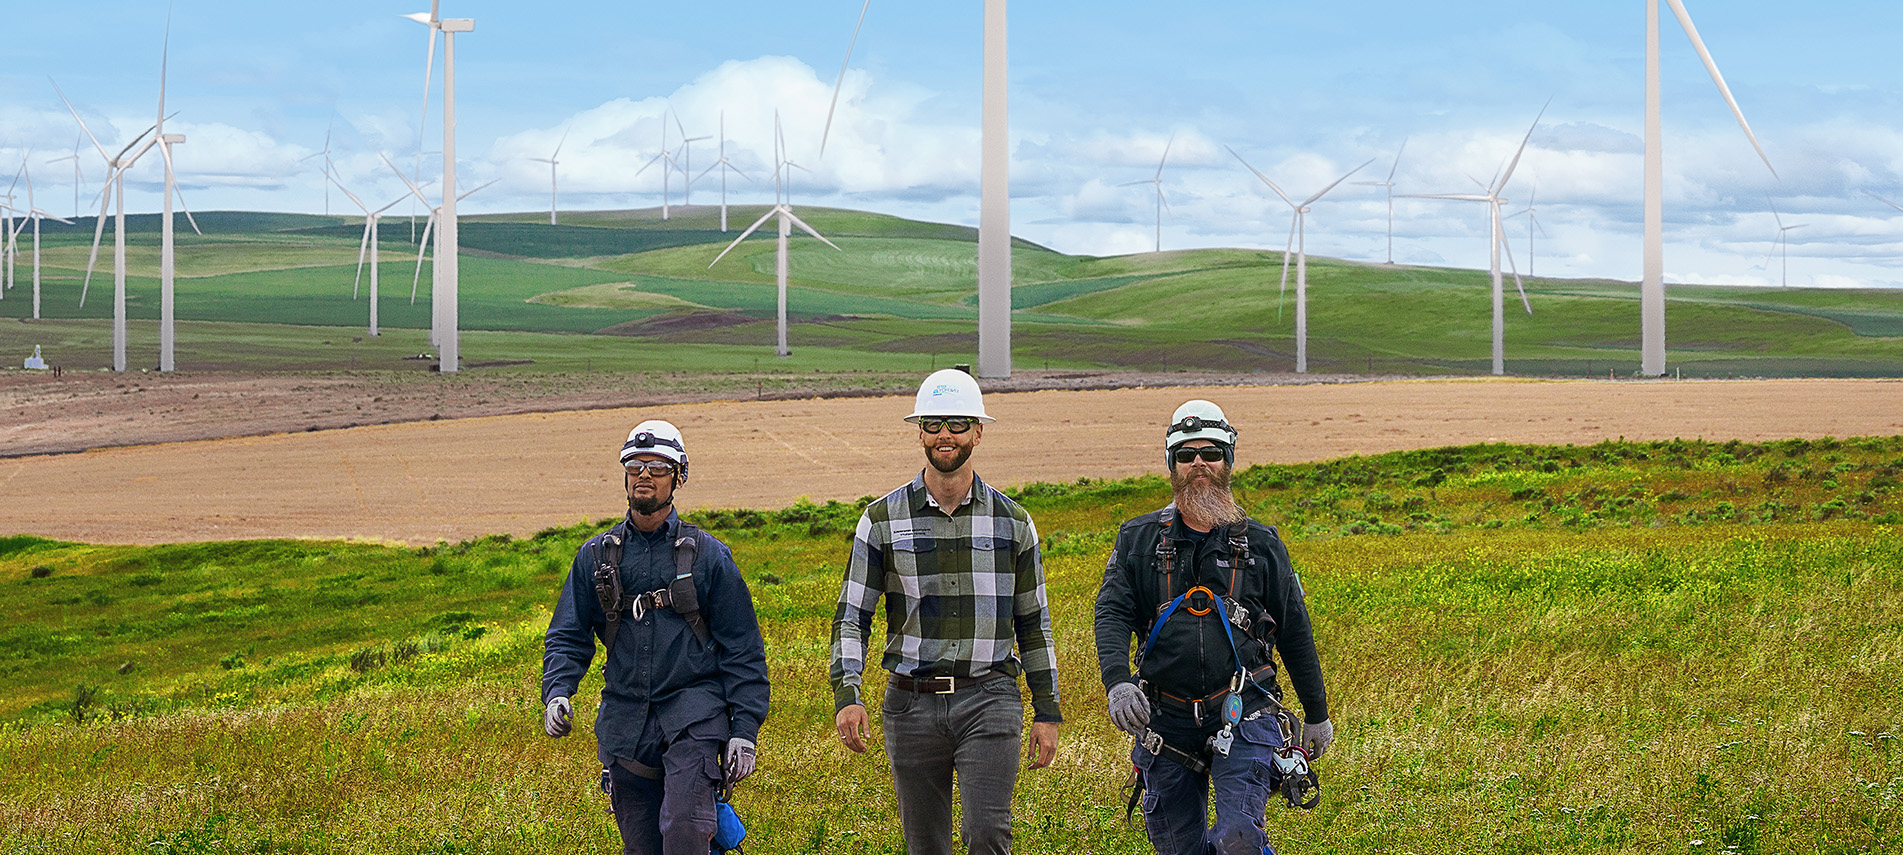 NextEra Energy enineers walking by the wind towers